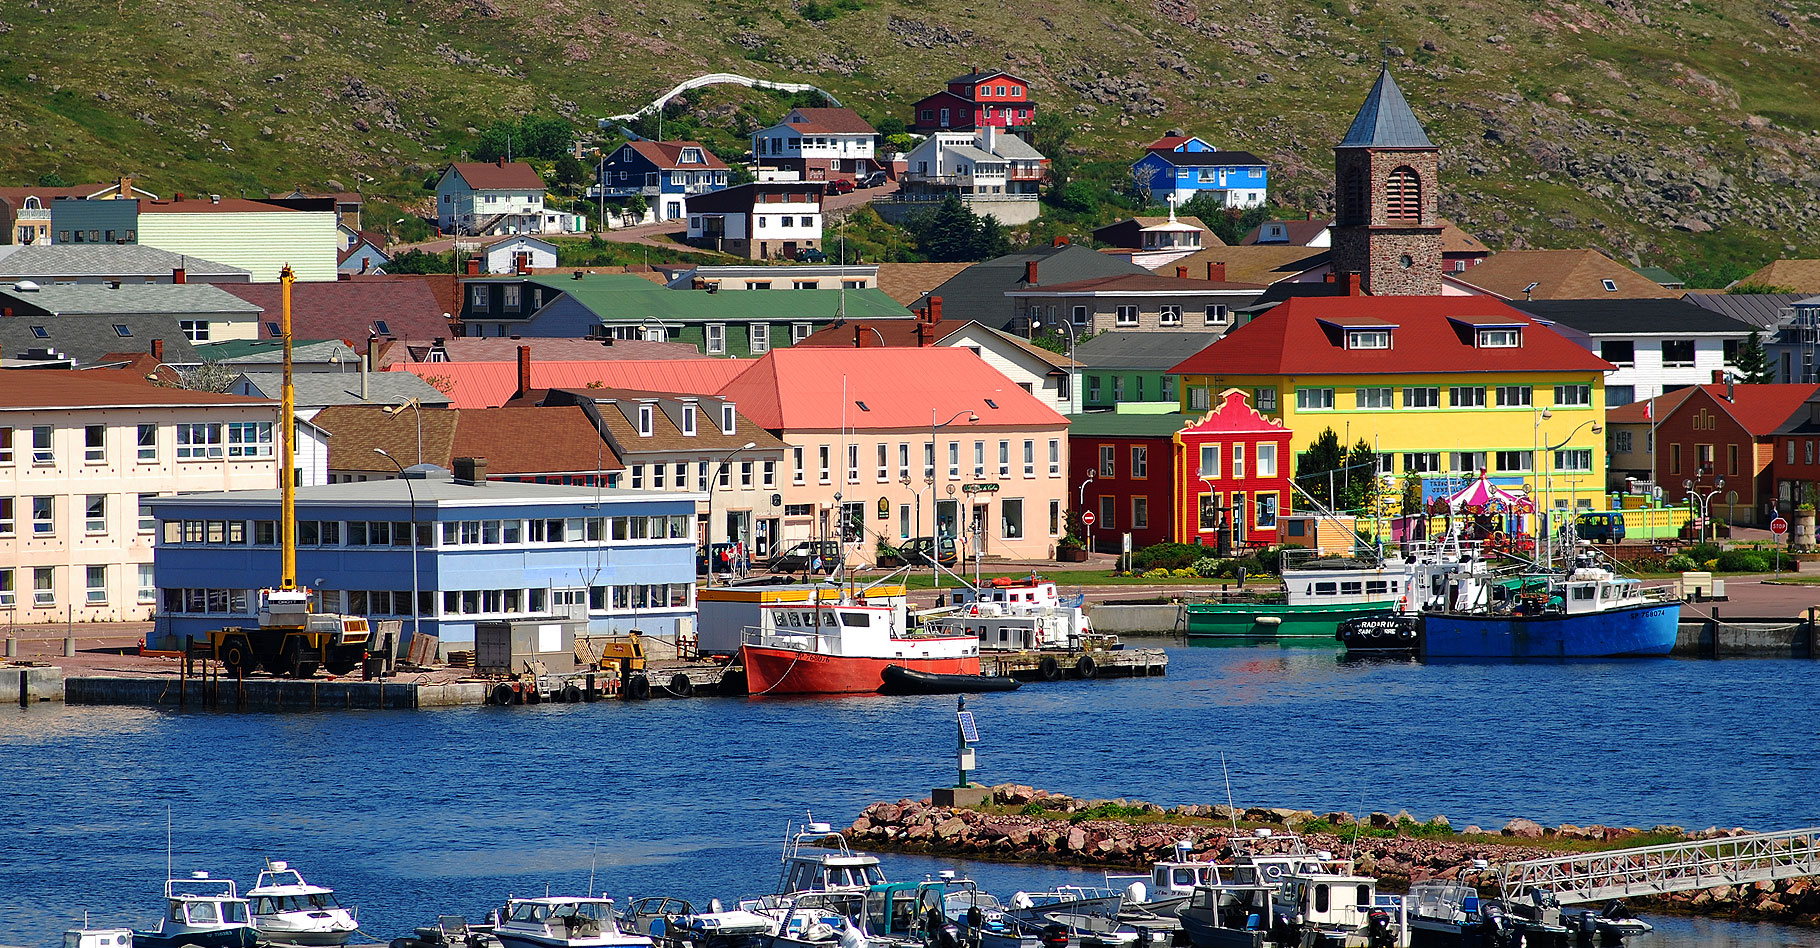 Le petit port de&nbsp;St Pierre et Miquelon.&nbsp;© Gord McKenna - CC BY-NC 2.0